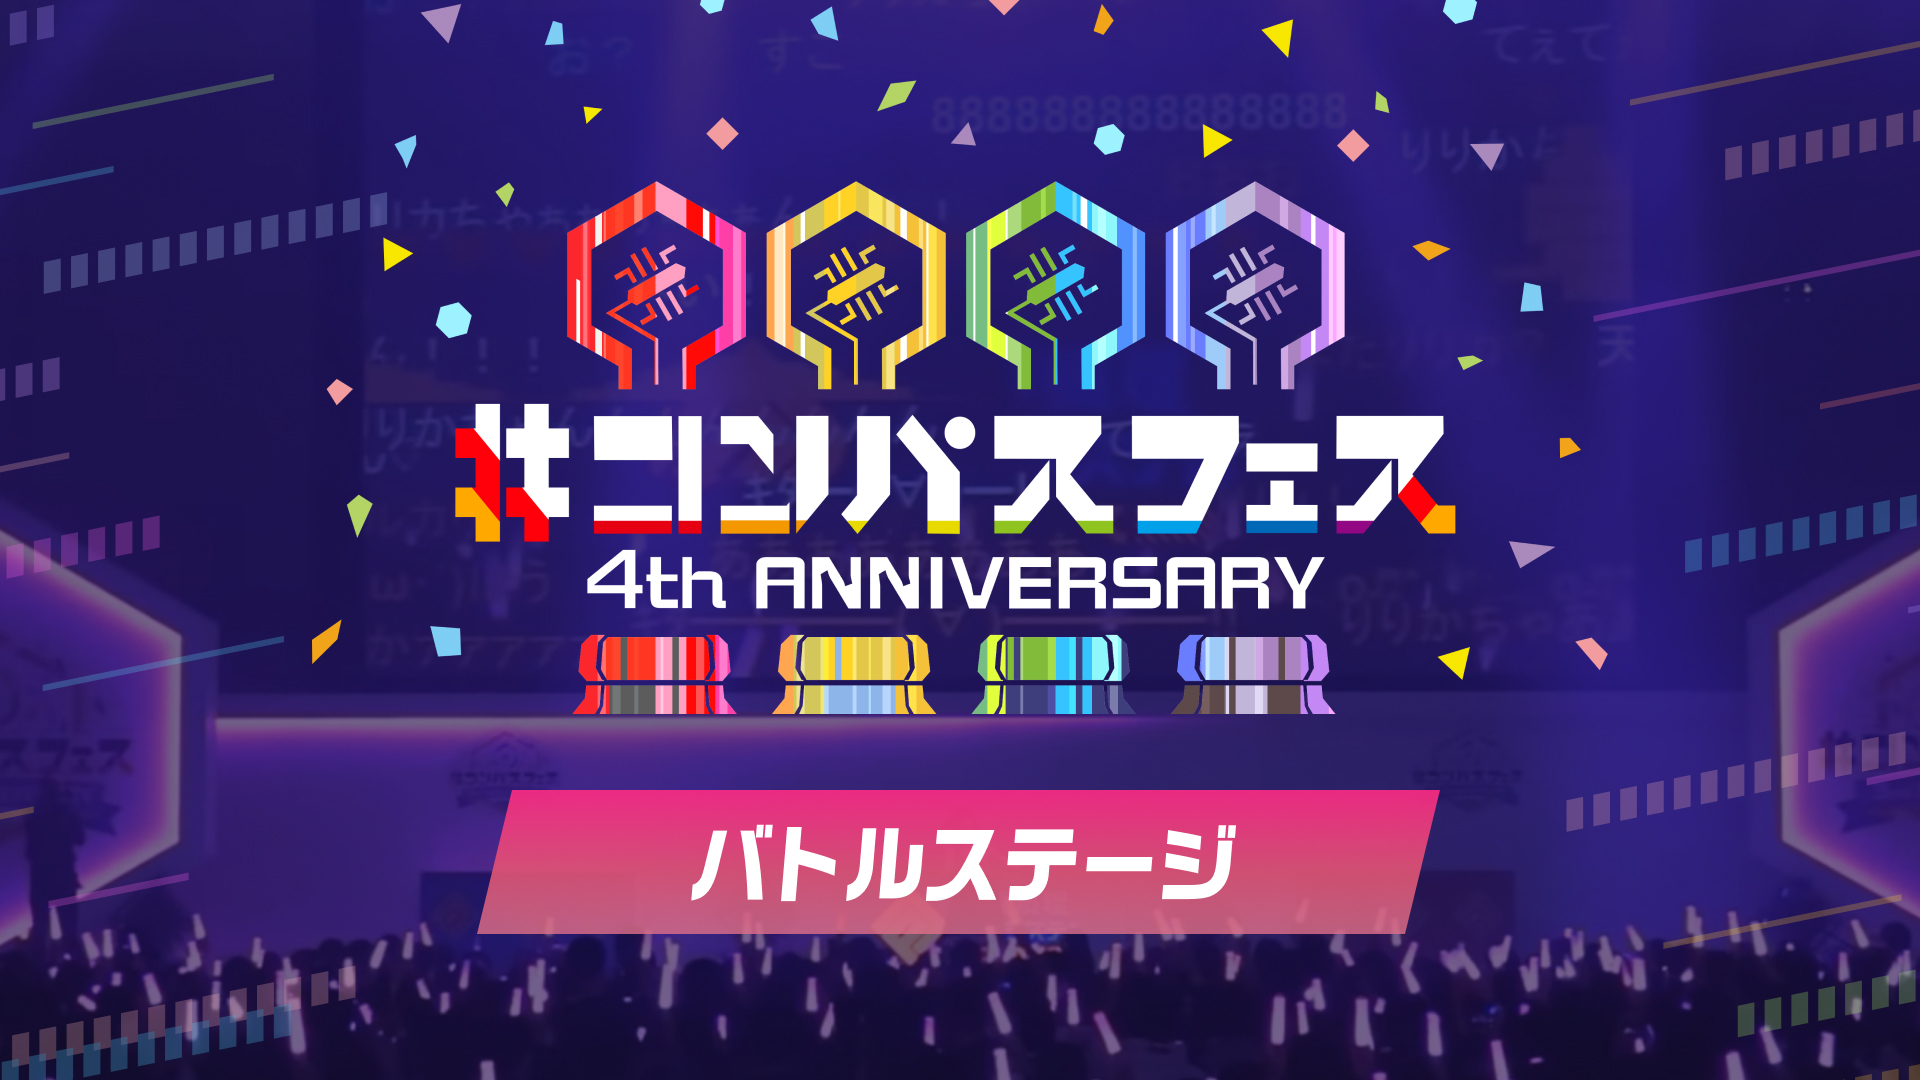 バトルステージ コンパスフェス 4th Anniversary 12 日 12 00開始 ニコニコ生放送